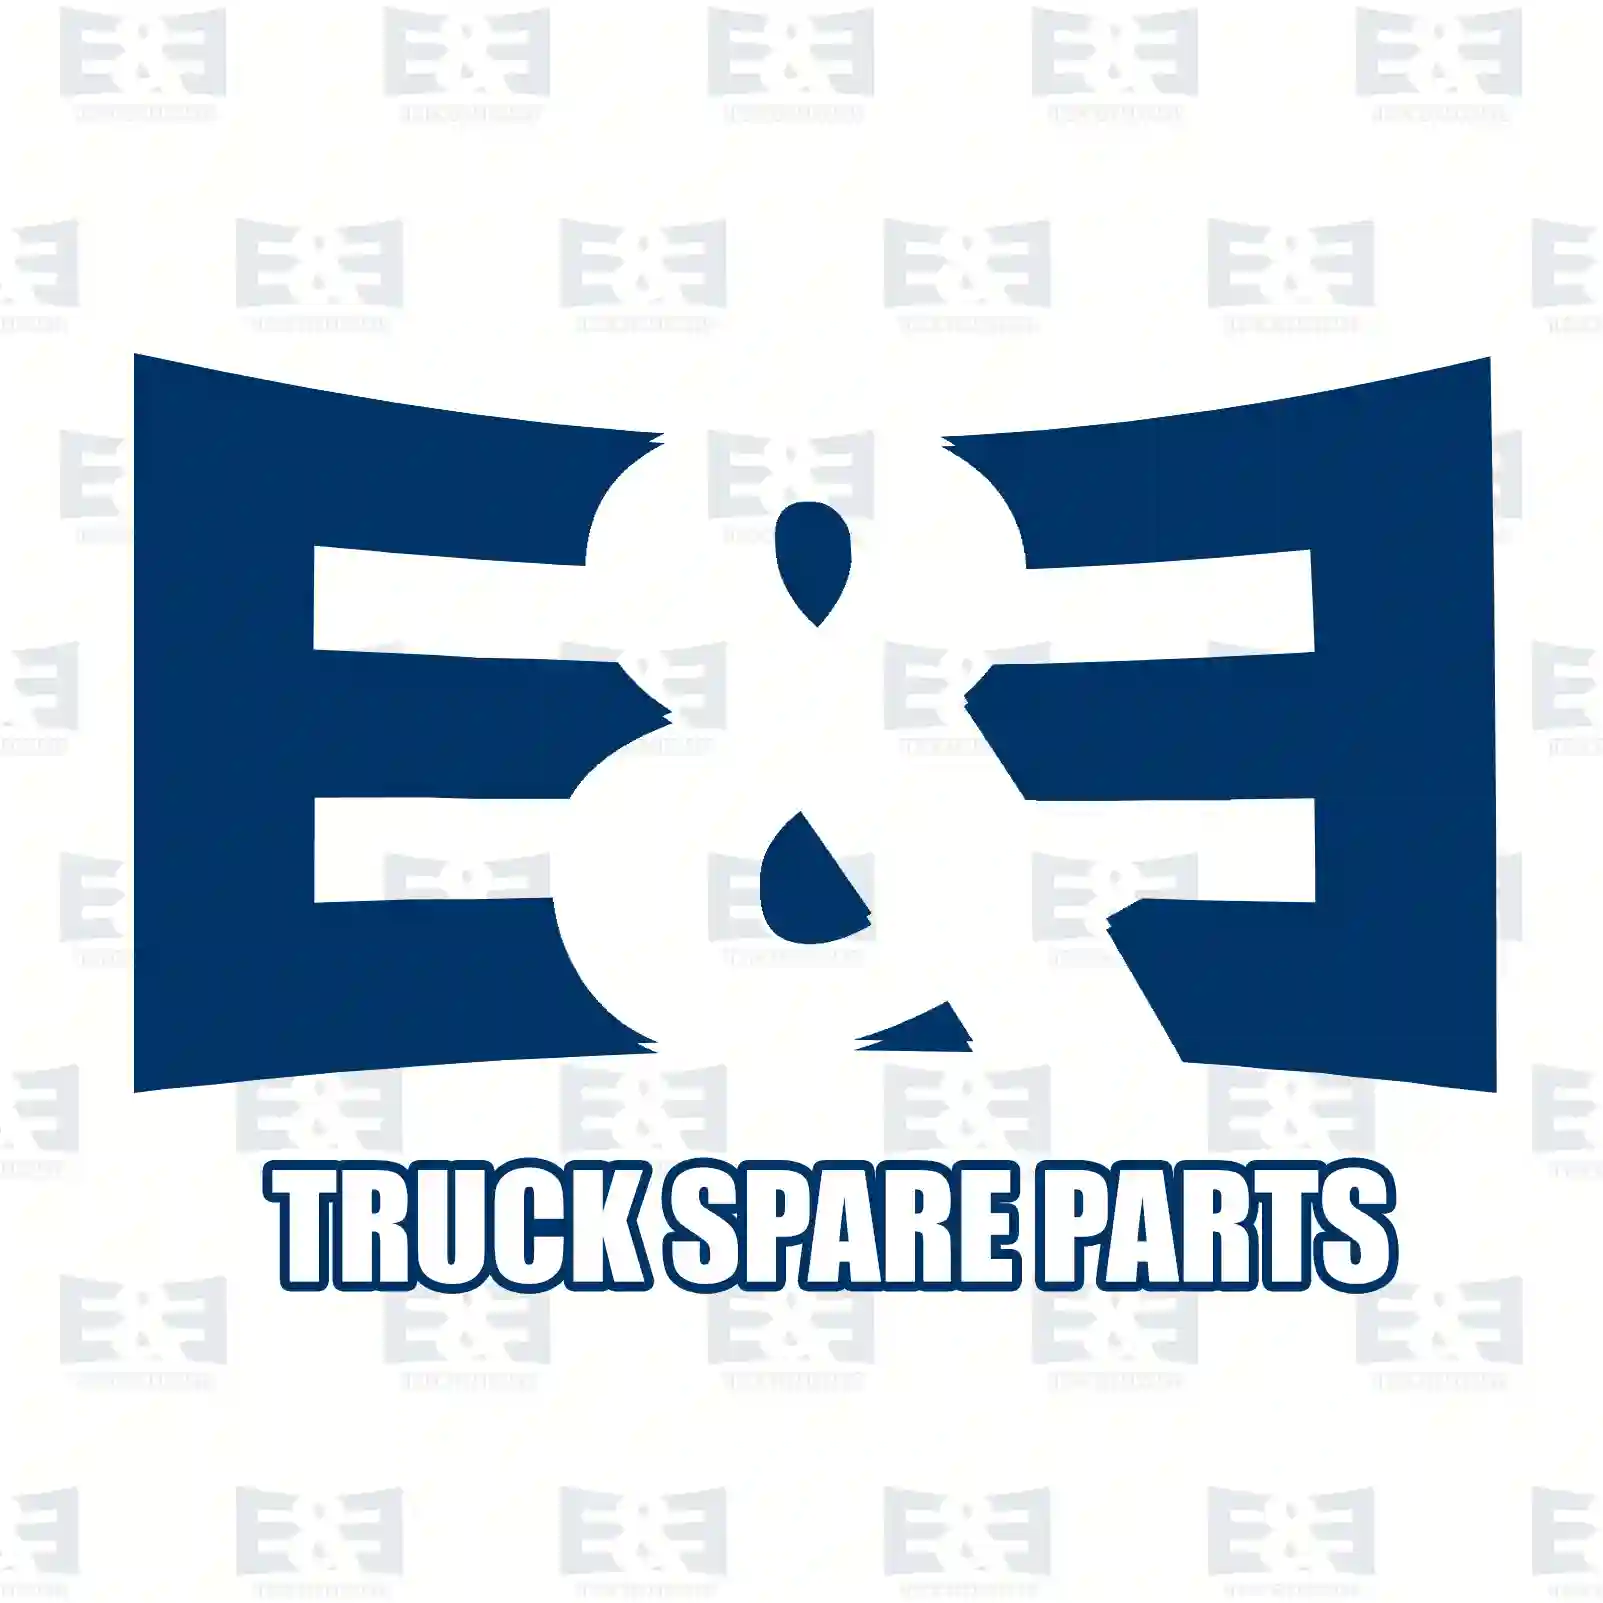 Camshaft, 2E2200997, 238401, 324419, 325646 ||  2E2200997 E&E Truck Spare Parts | Truck Spare Parts, Auotomotive Spare Parts Camshaft, 2E2200997, 238401, 324419, 325646 ||  2E2200997 E&E Truck Spare Parts | Truck Spare Parts, Auotomotive Spare Parts